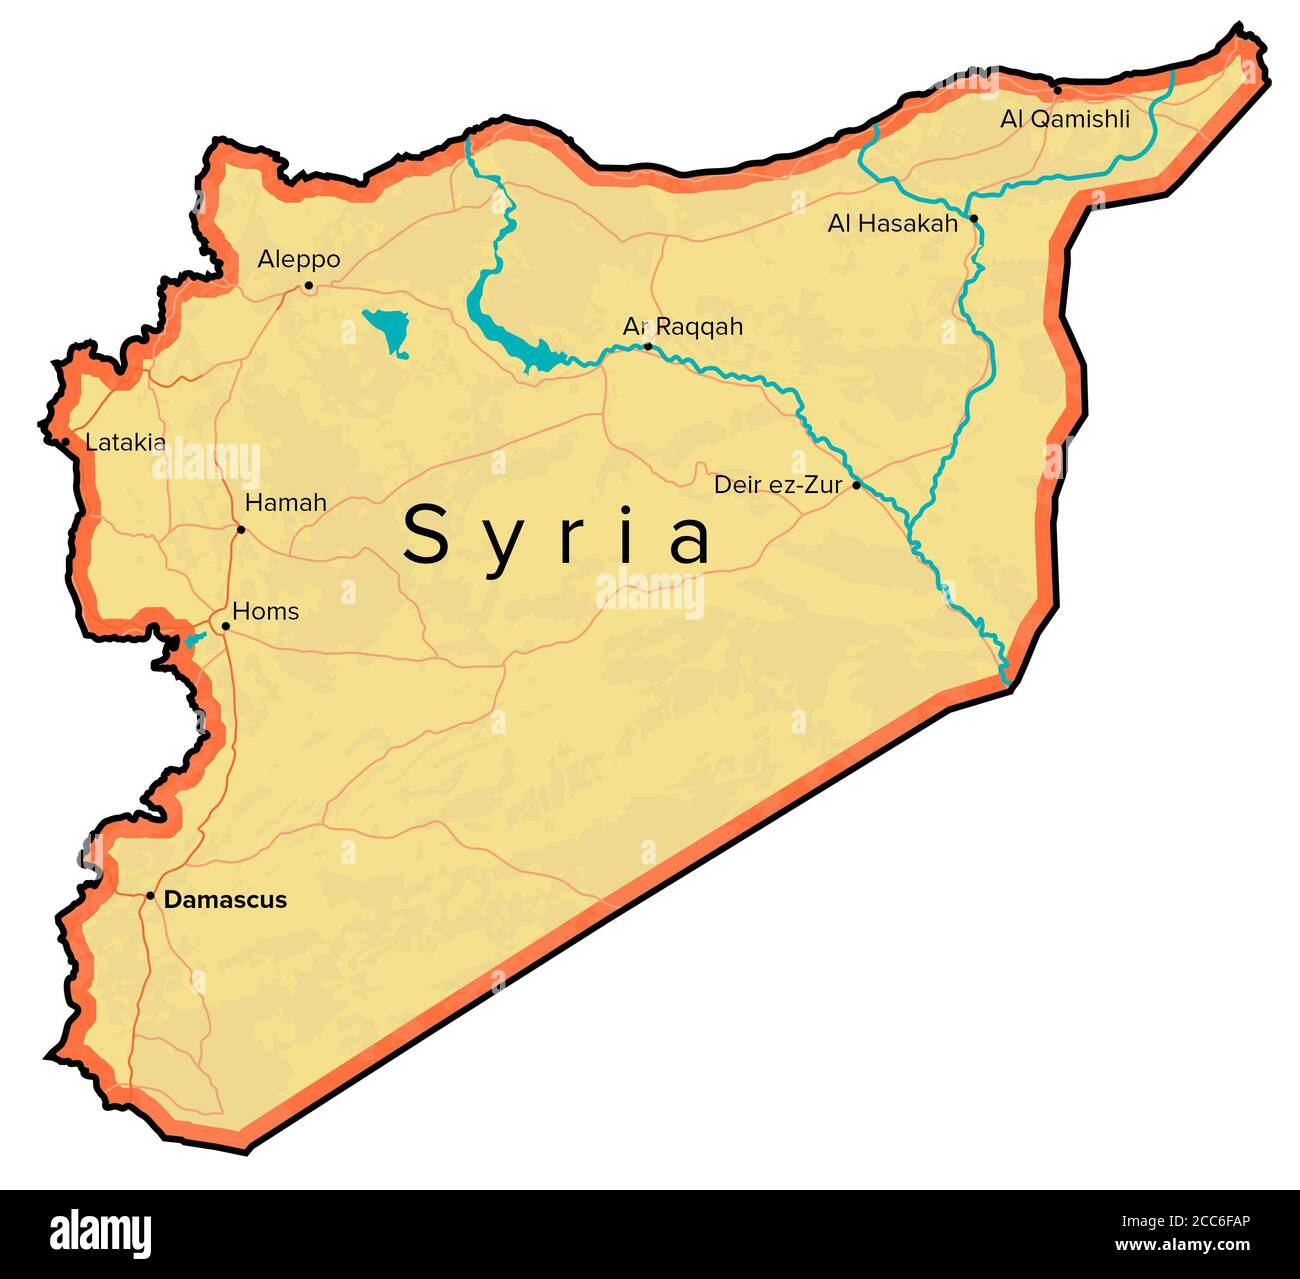 Syrienkarte, Flüsse, Straßen und Städte. Handgezeichnete Karte. Nahost-Kartographie Stockfoto